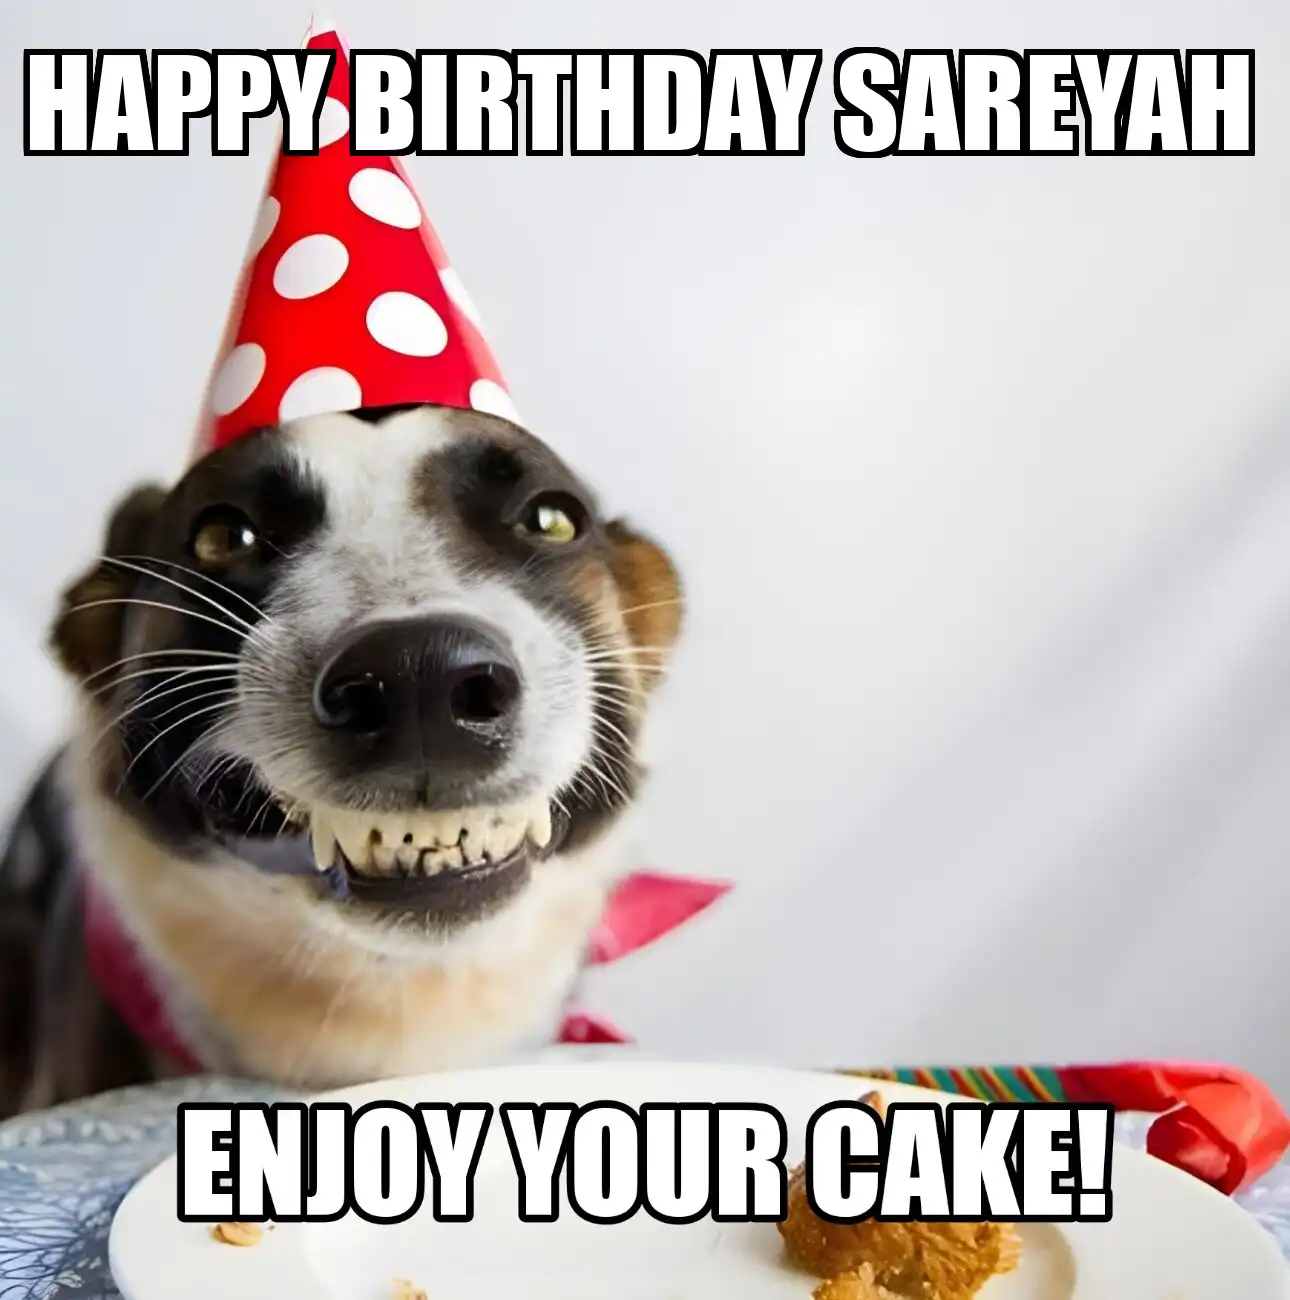 Happy Birthday Sareyah Enjoy Your Cake Dog Meme